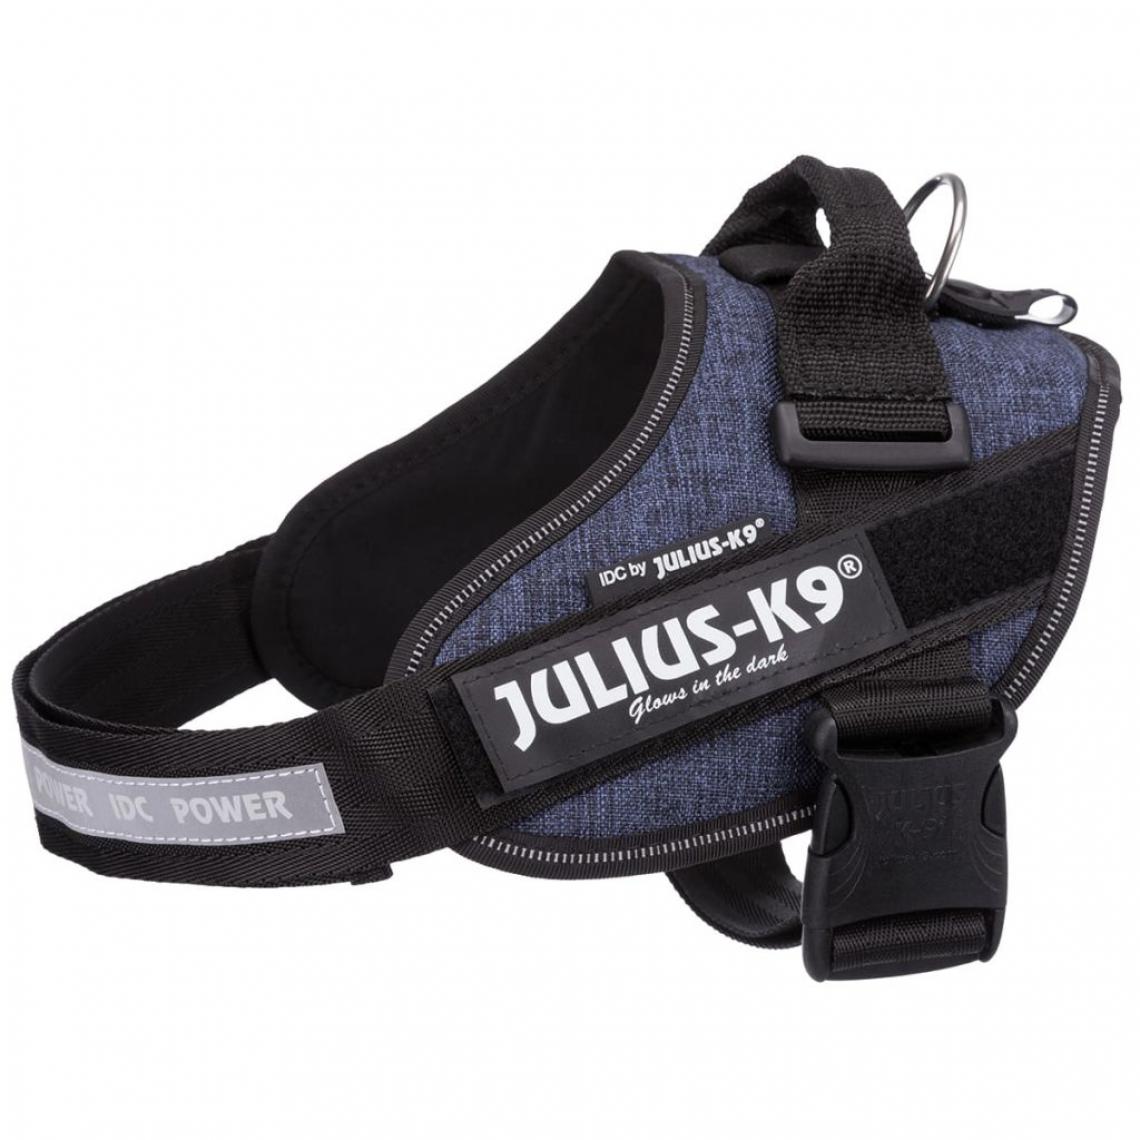 Julius K9 - JULIUS K9 Harnais Power IDC 0–M–L : 58–76 cm - 40 mm - Bleu jean - Pour chien - Equipement de transport pour chien